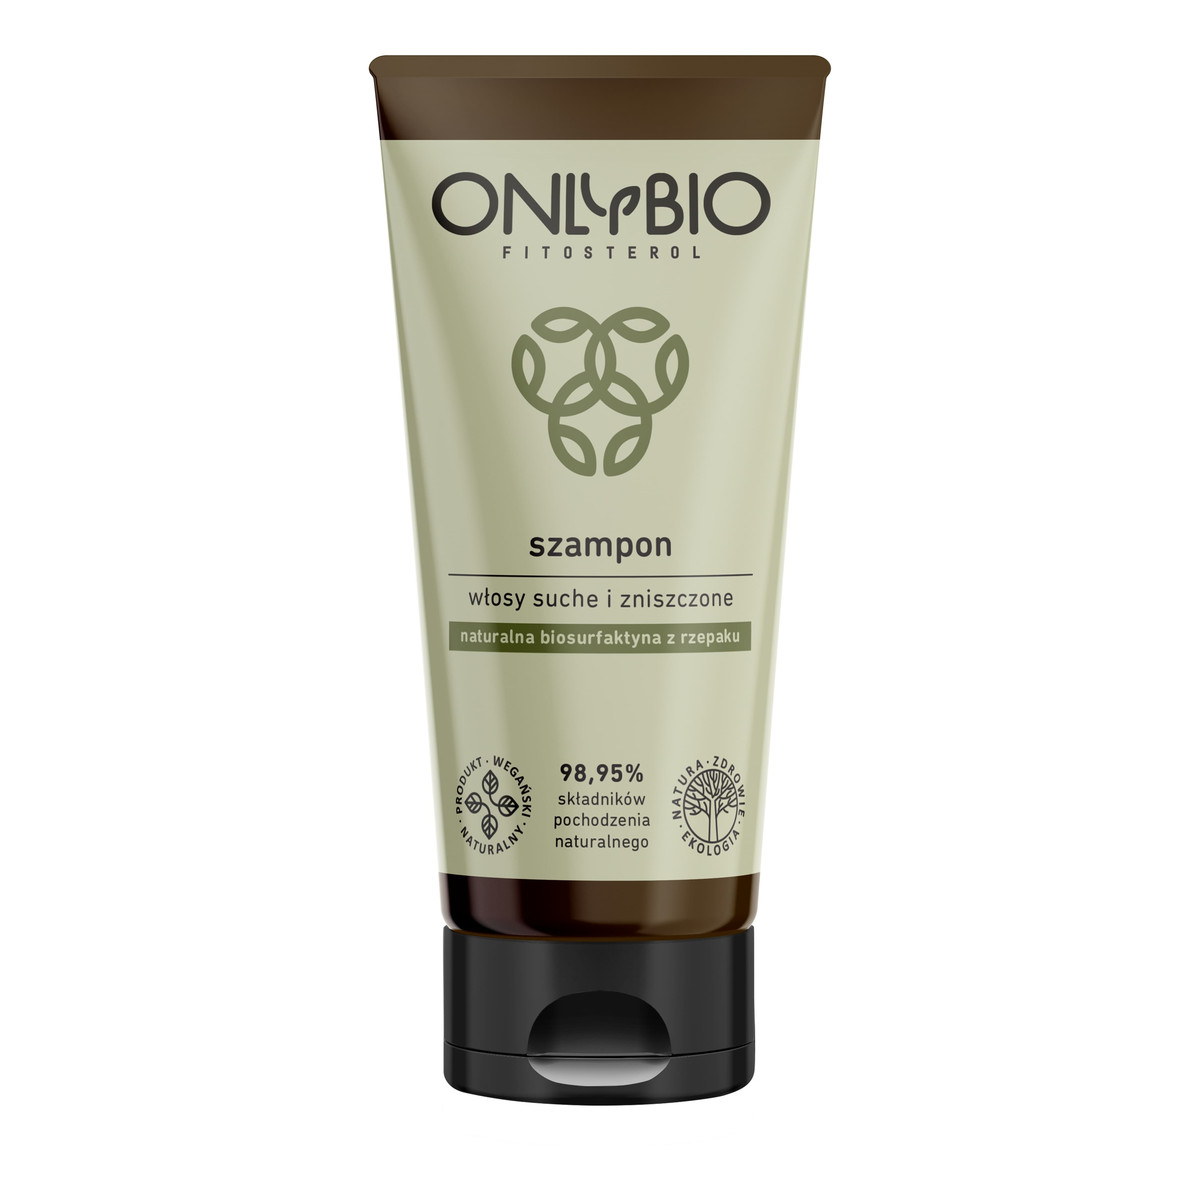 OnlyBio Fitosterol szampon do włosów suchych i zniszczonych z olejem z sezamu 200ml